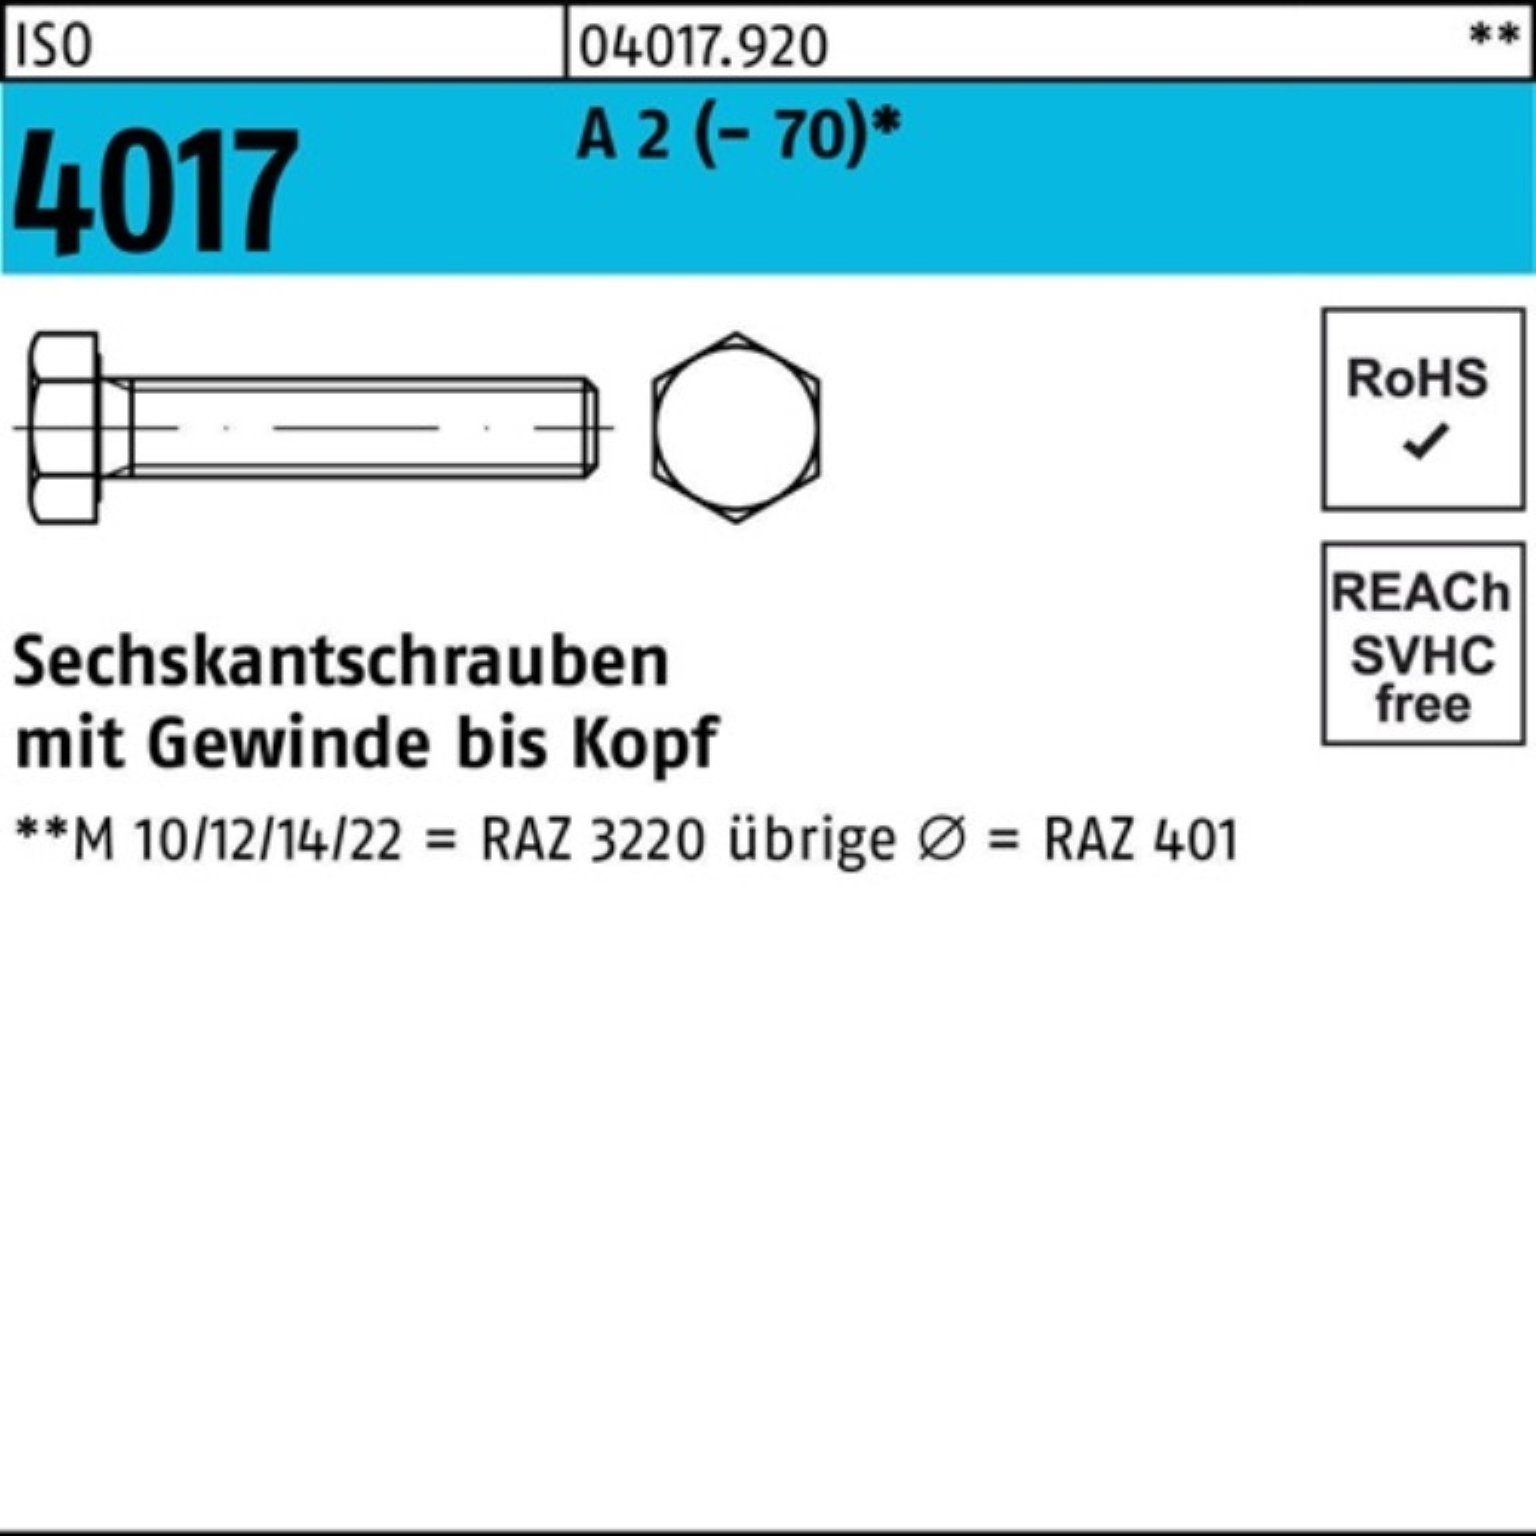 Sechskantschraube Stück Sechskantschraube M6x 4017 A 2 Bufab Pack 35 100 VG ISO 100er (70)